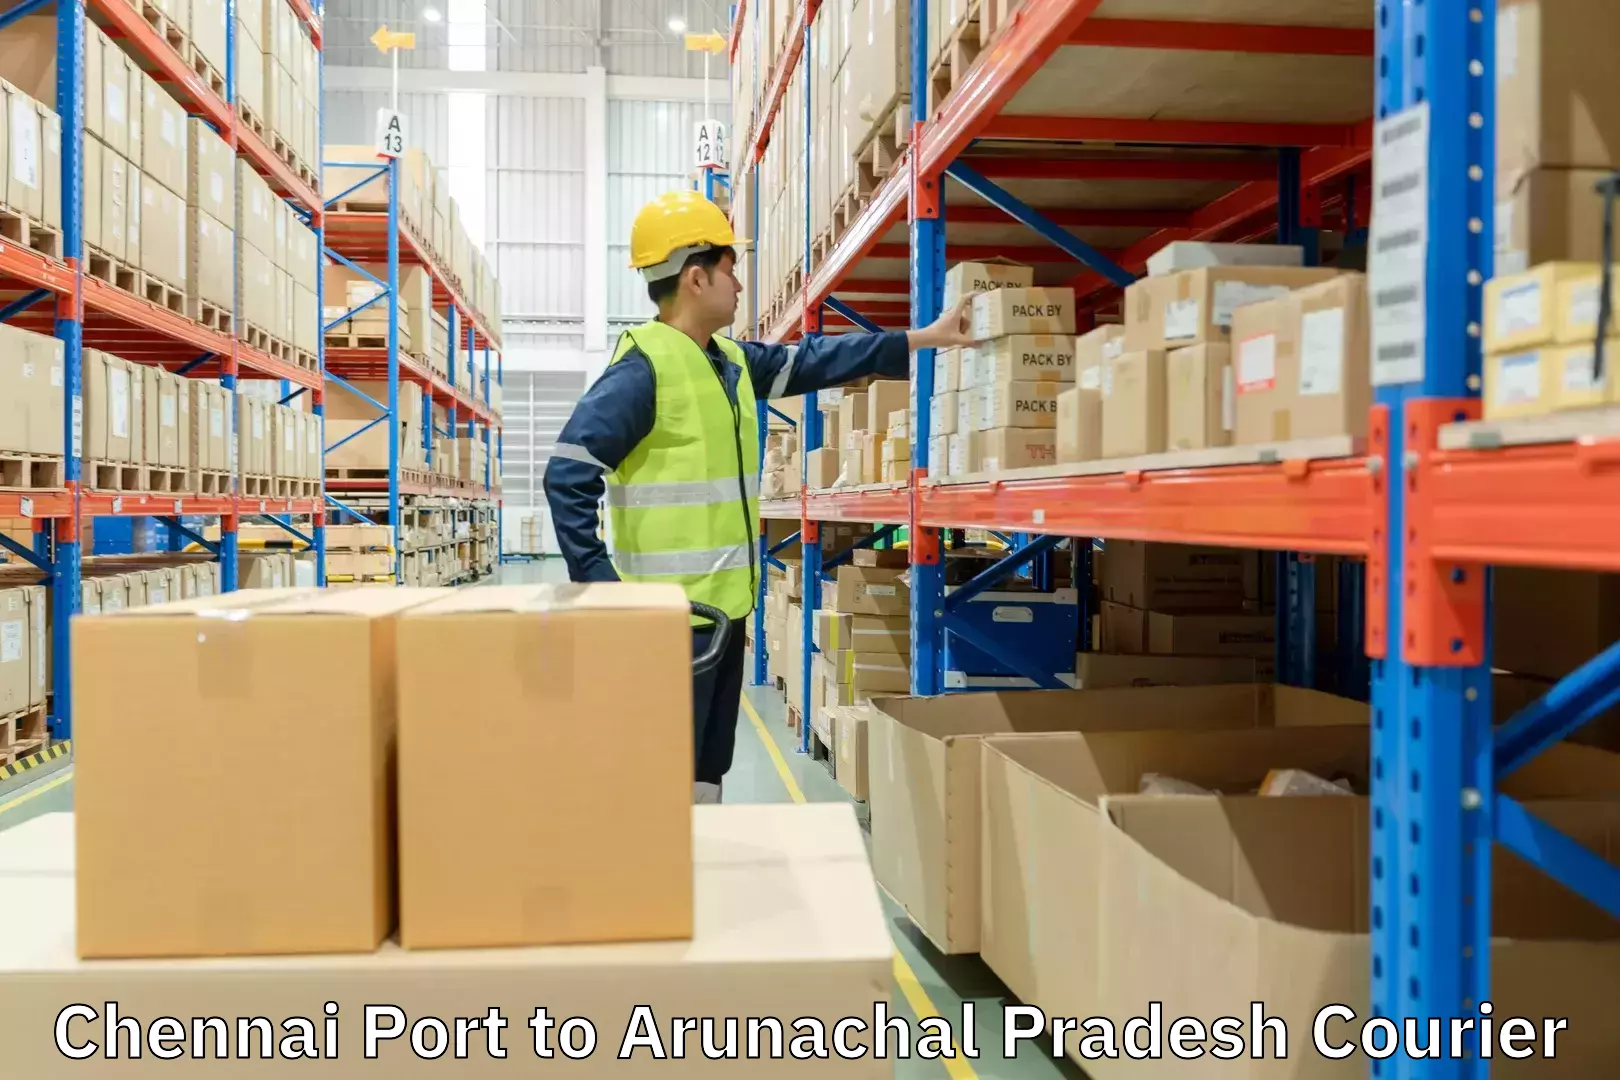 Cargo delivery service Chennai Port to Arunachal Pradesh